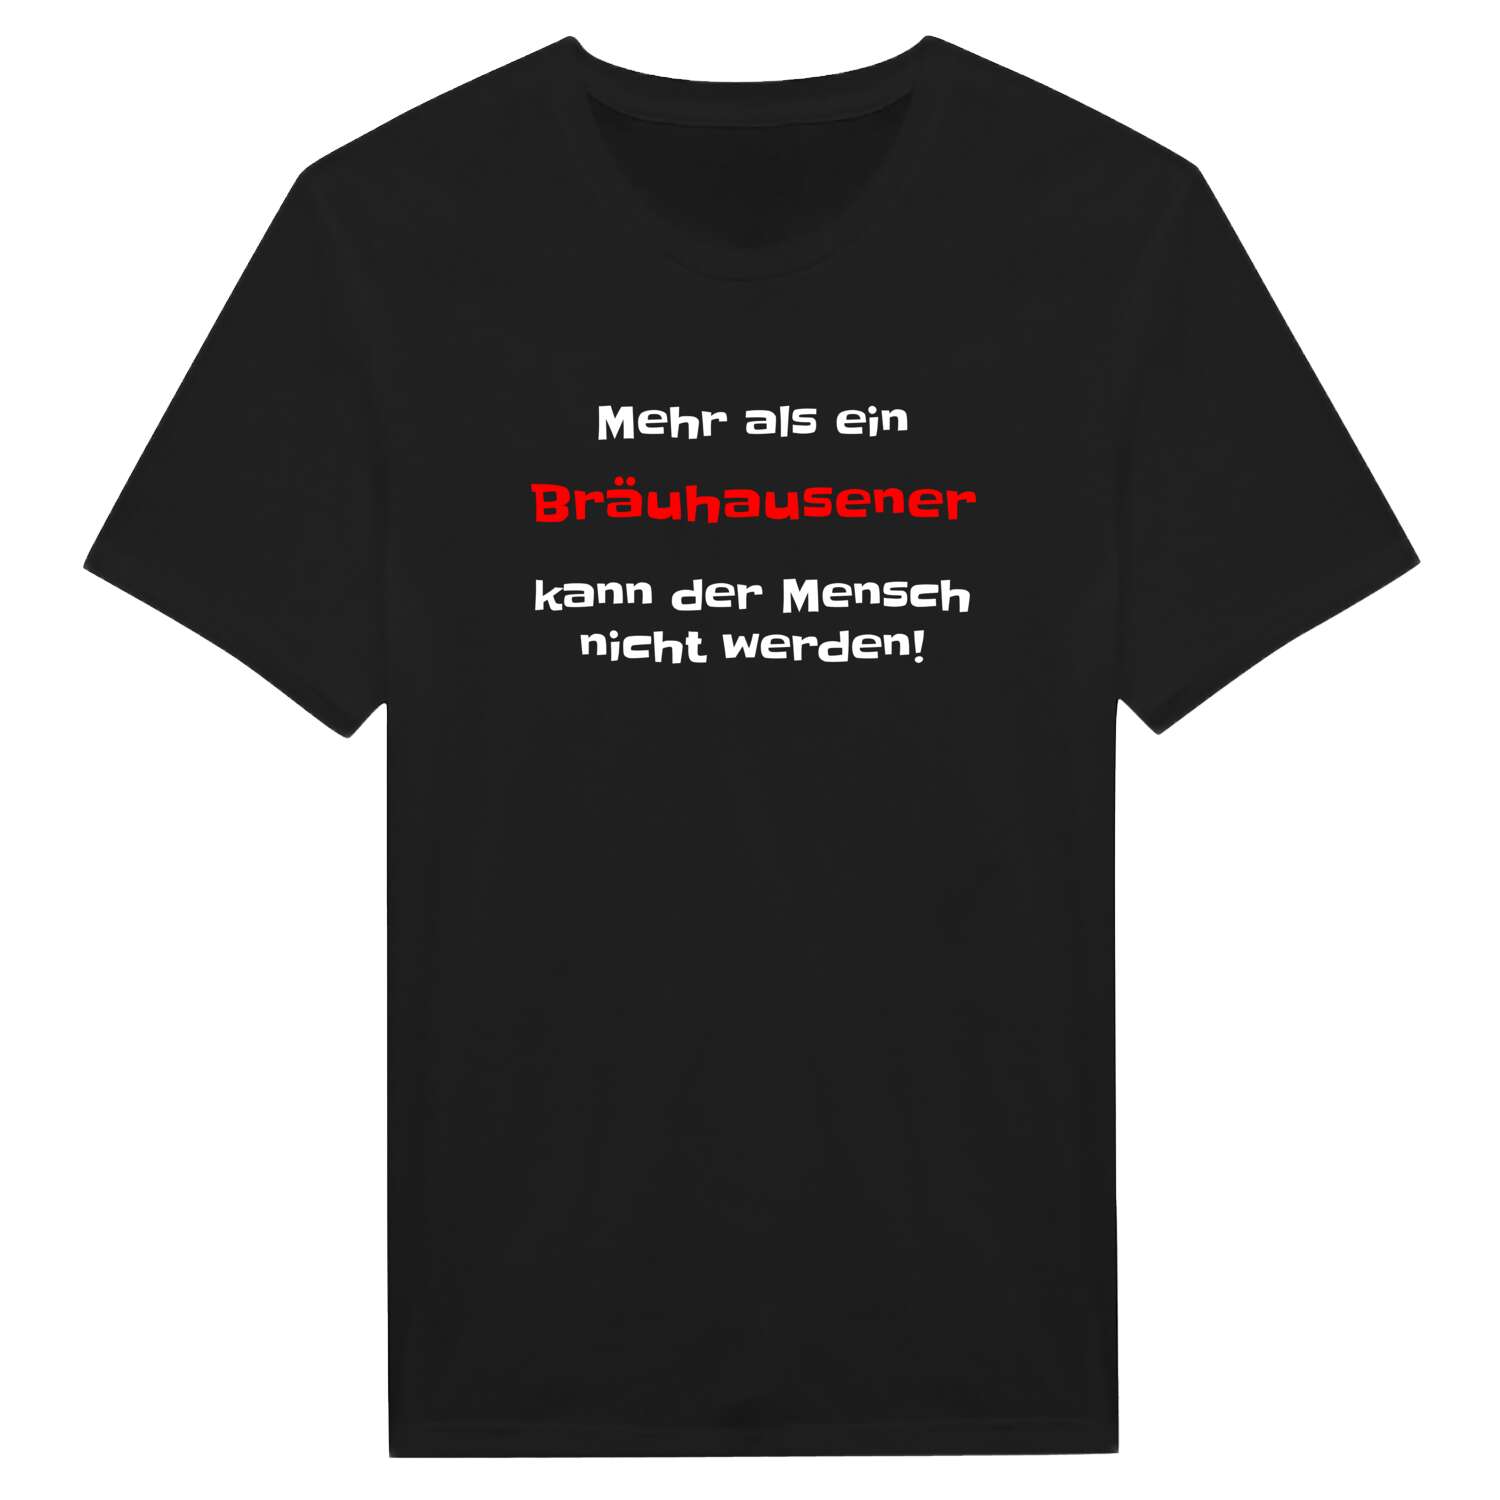 Bräuhausen T-Shirt »Mehr als ein«